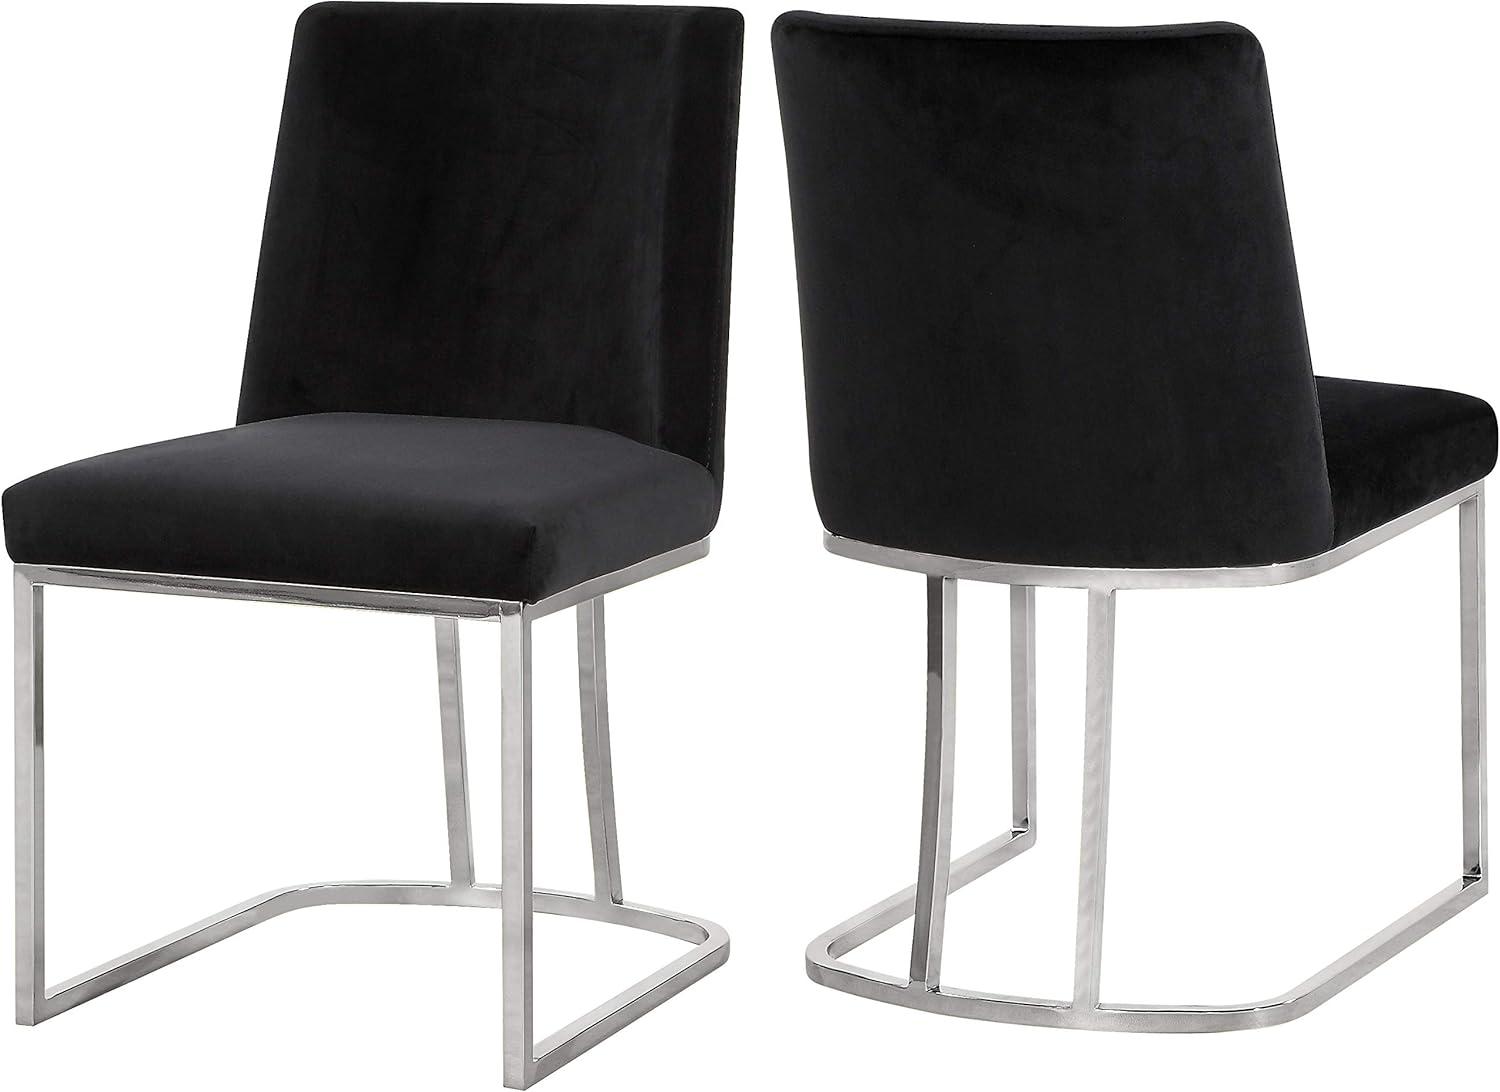 Velvet Upholstered Side Chair in Black with Chrome Metal Frame